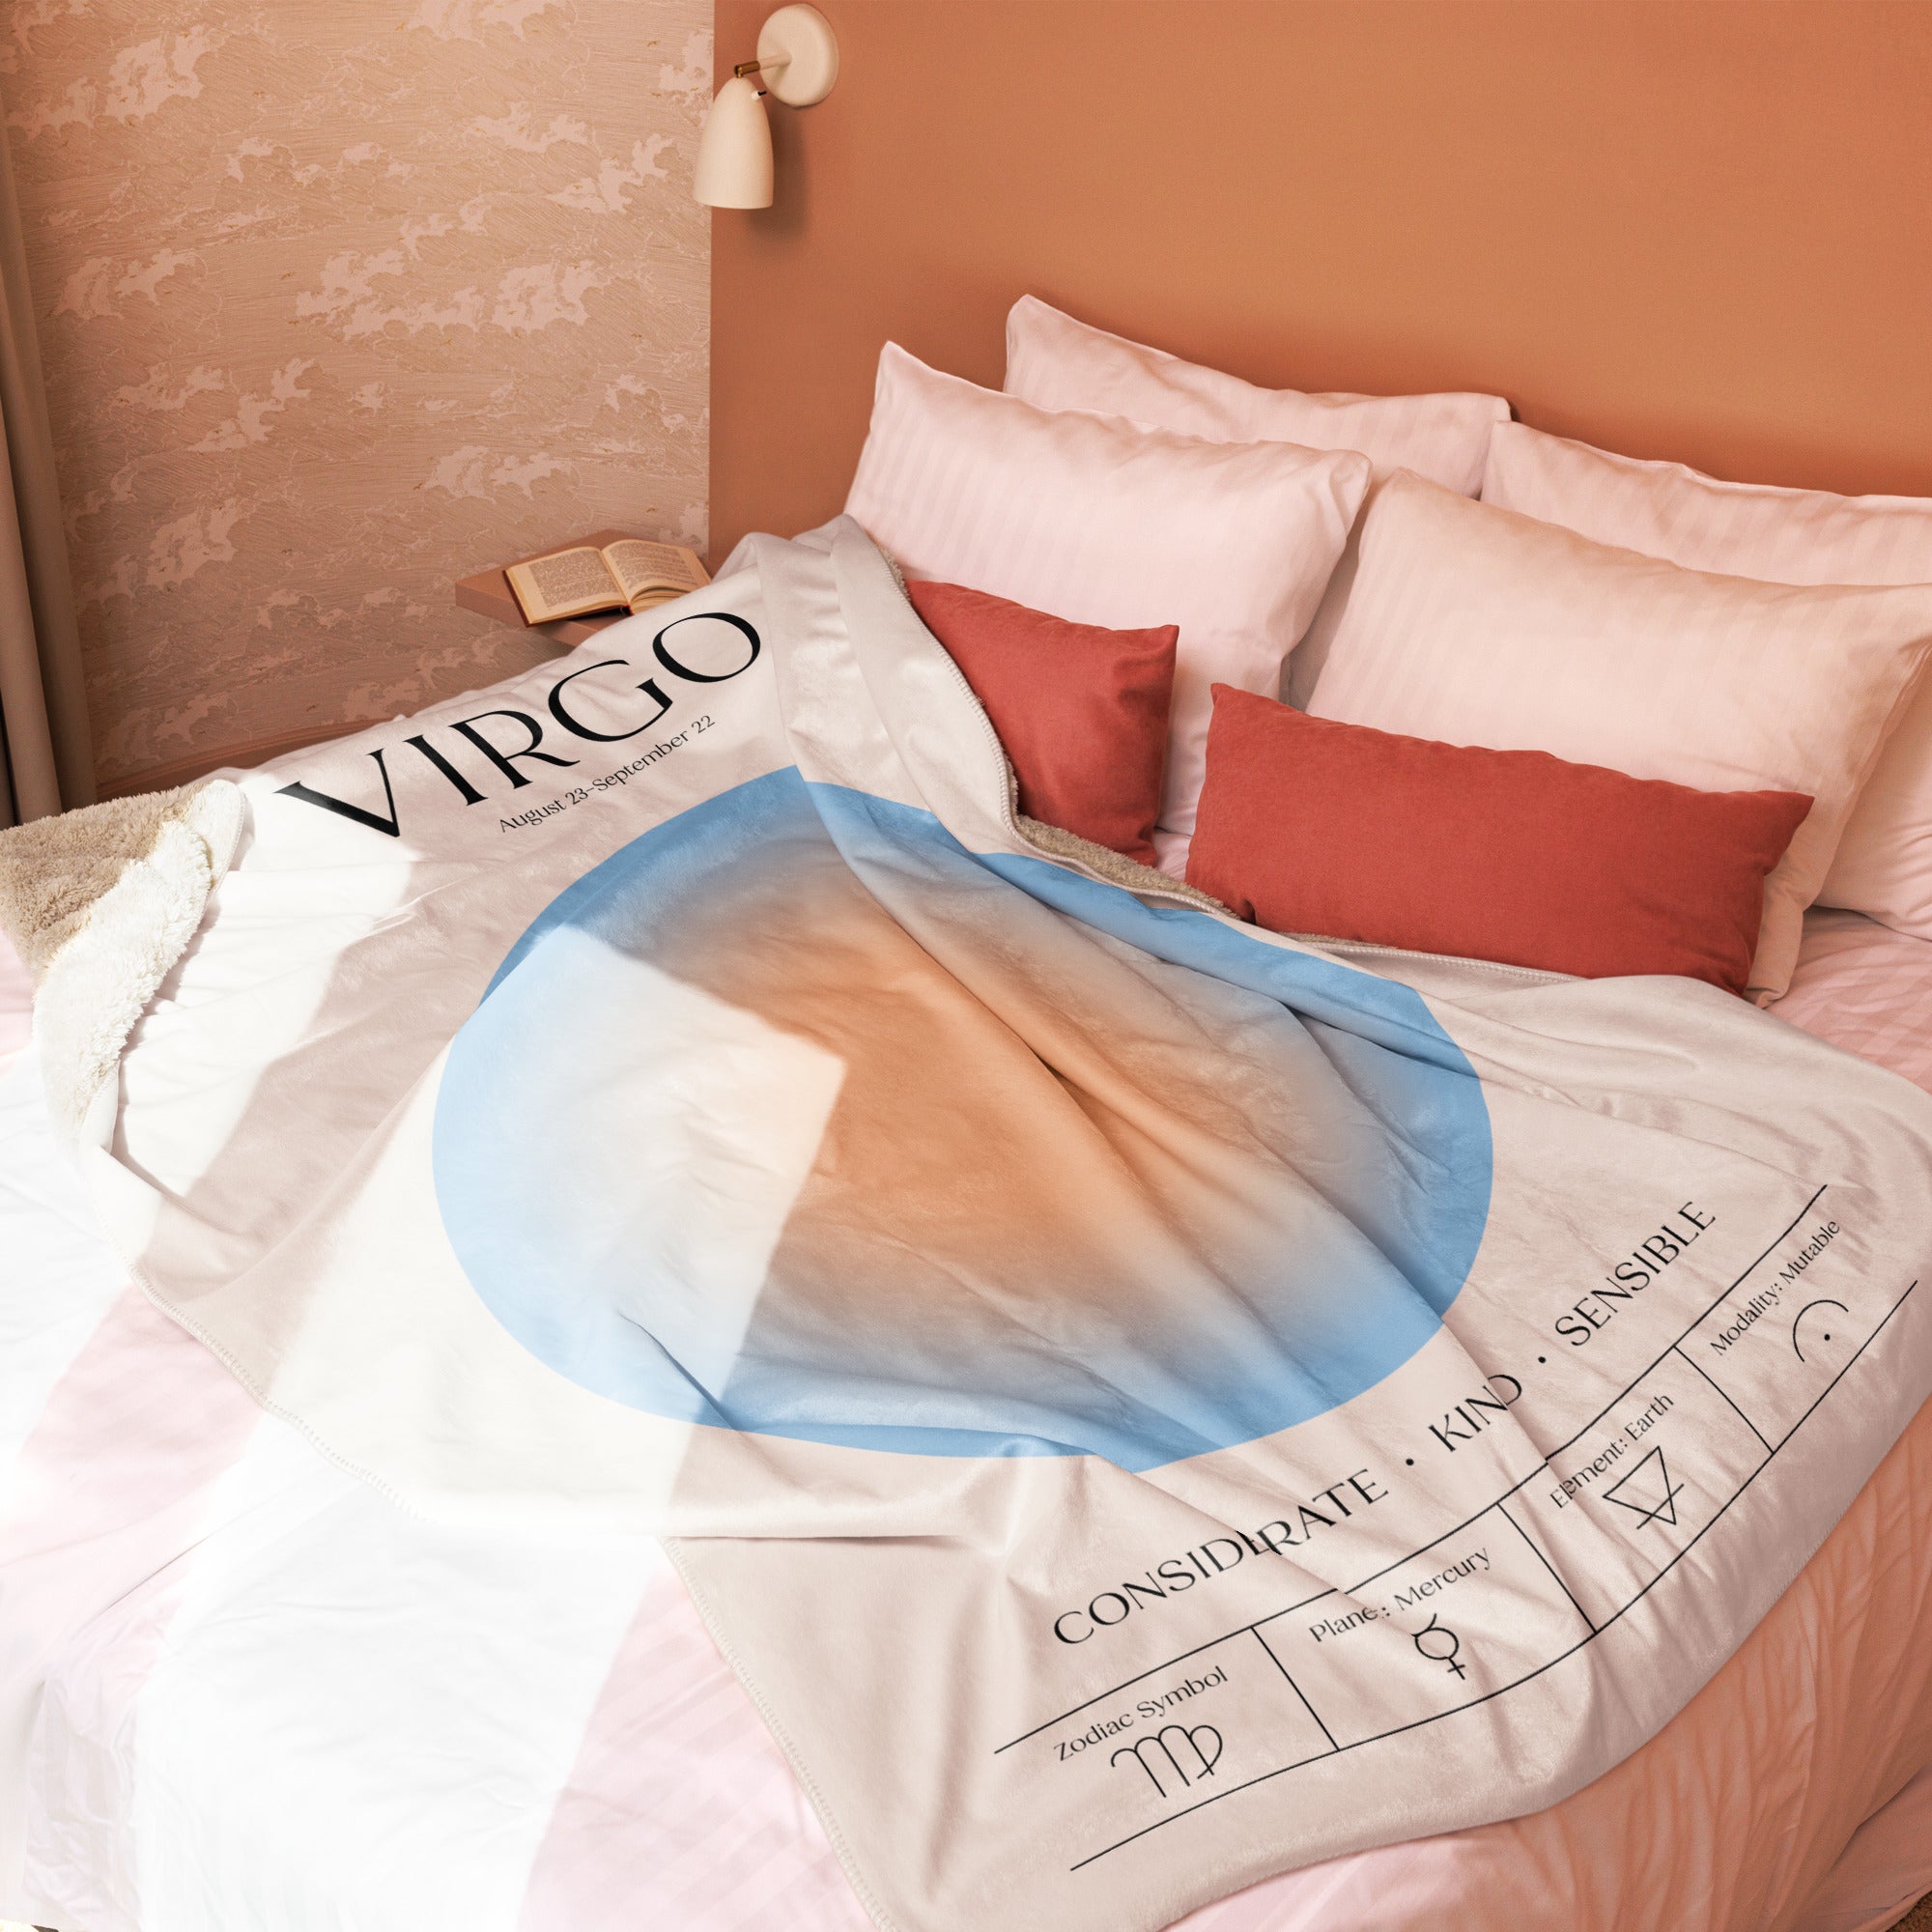 Virgo Zodiac Sherpa Blanket